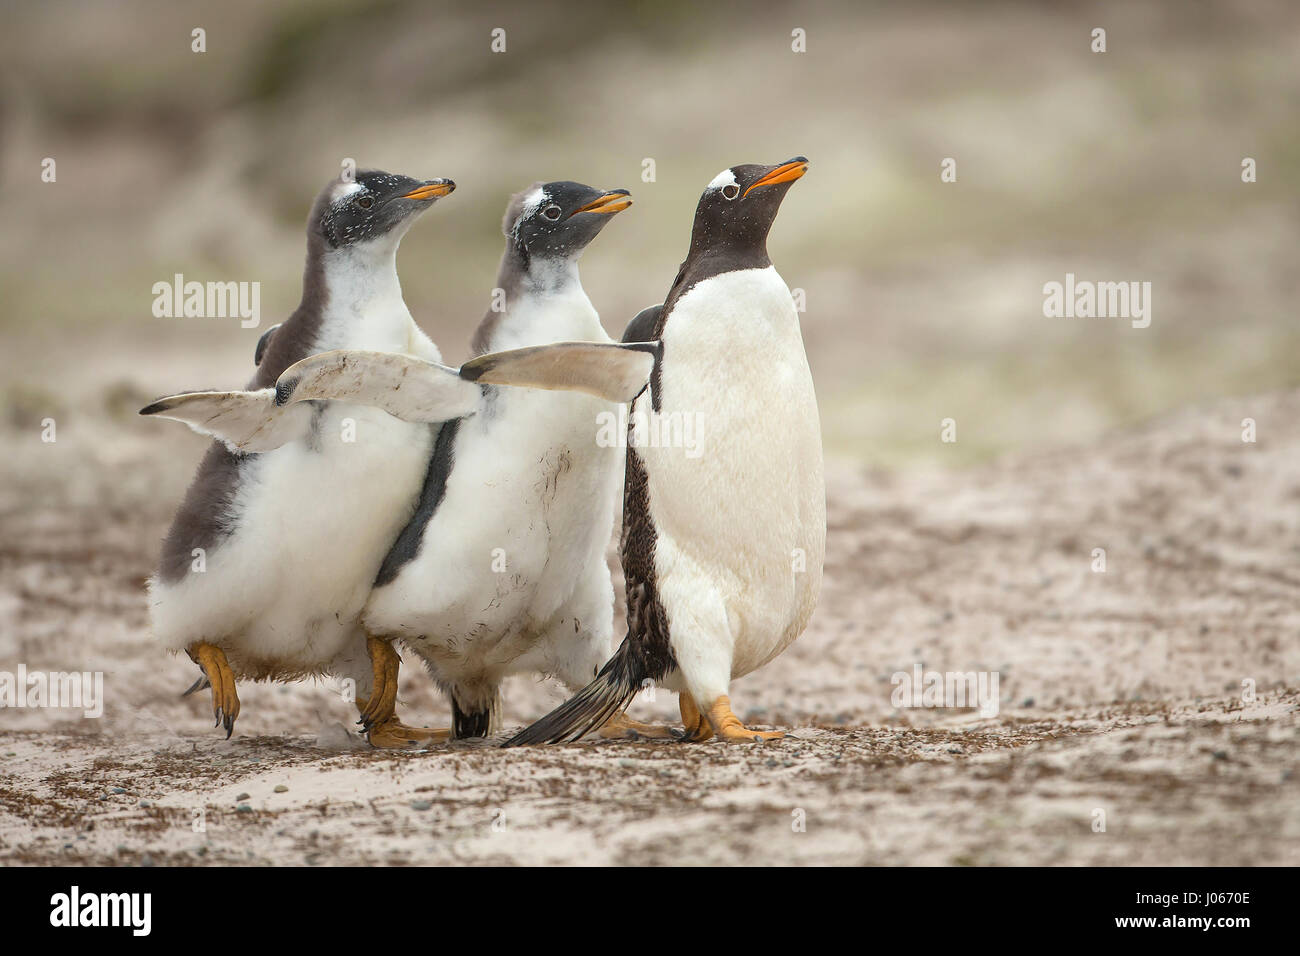 Isole Falkland, Sud Atlantico: giocoso pinguino pulcini che vivono sul territorio britannico sono stati innestati godendo di una macchia di Gentoo divertente. Questo troppo carino trio di pinguini Gentoo può essere visto sculettando il loro modo torna alla mamma. Il primo pinguino pulcino per raggiungere la sua ottenuto di avere il suo pick-pick-pick di grub. Mostra gli scatti eventuale vincitore del pulcino-chase ottenendo un buon punto di partenza per i suoi fratelli e in definitiva essere ricompensati dal suo genitore, lasciando gli altri a mangiare solo la sua polvere. Per fortuna una volta ripristinata la mamma di disciplina con un rap di poppa alla testa con il suo becco, non vi era alcun sentimenti difficili tra di si Foto Stock